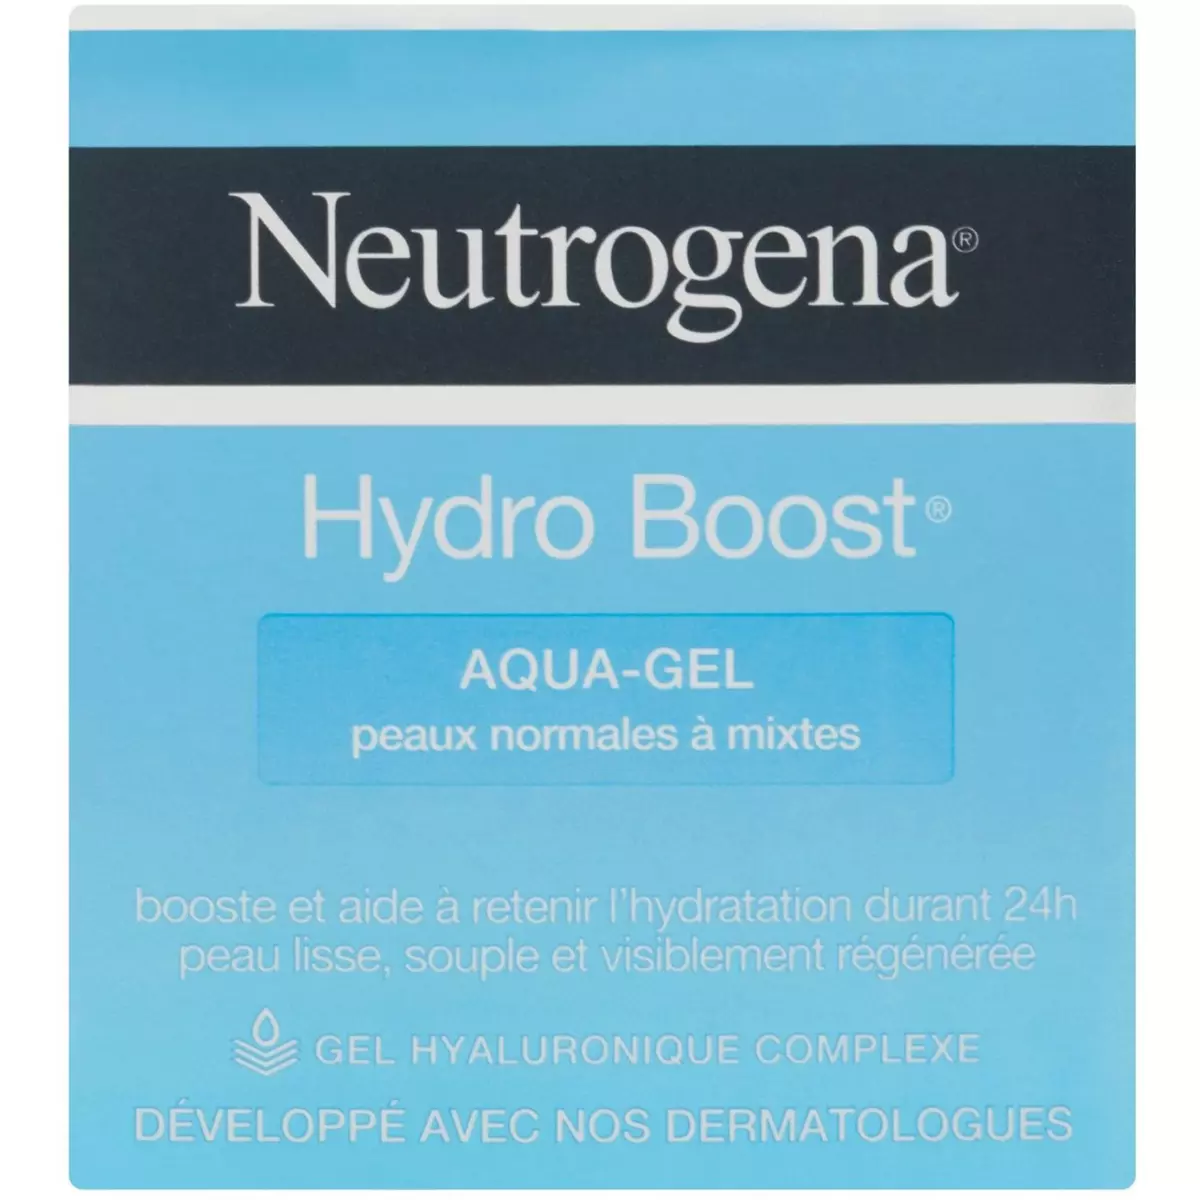 NEUTROGENA Hydro Boost aqua-gel hydratant 50ml